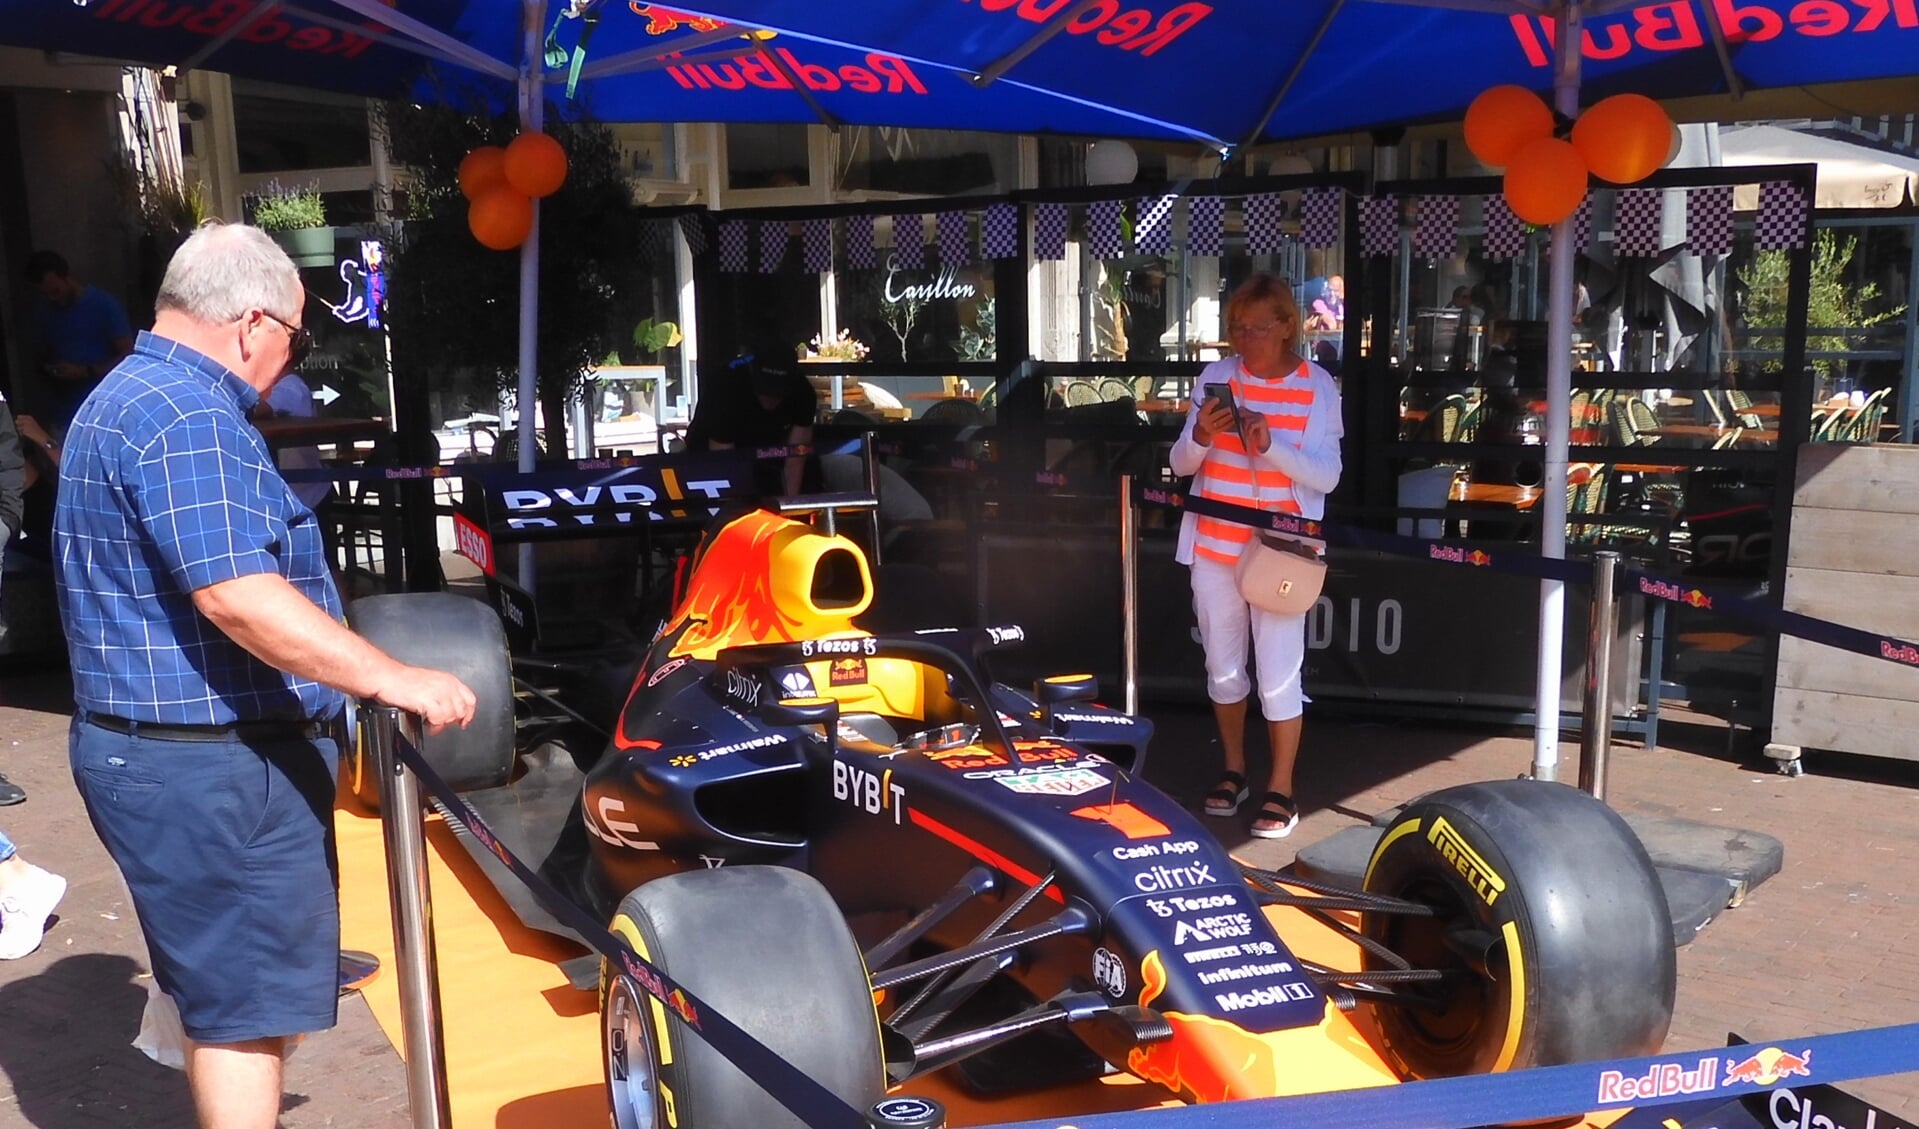 De racewagen van Red Bull trok veel bekijks.